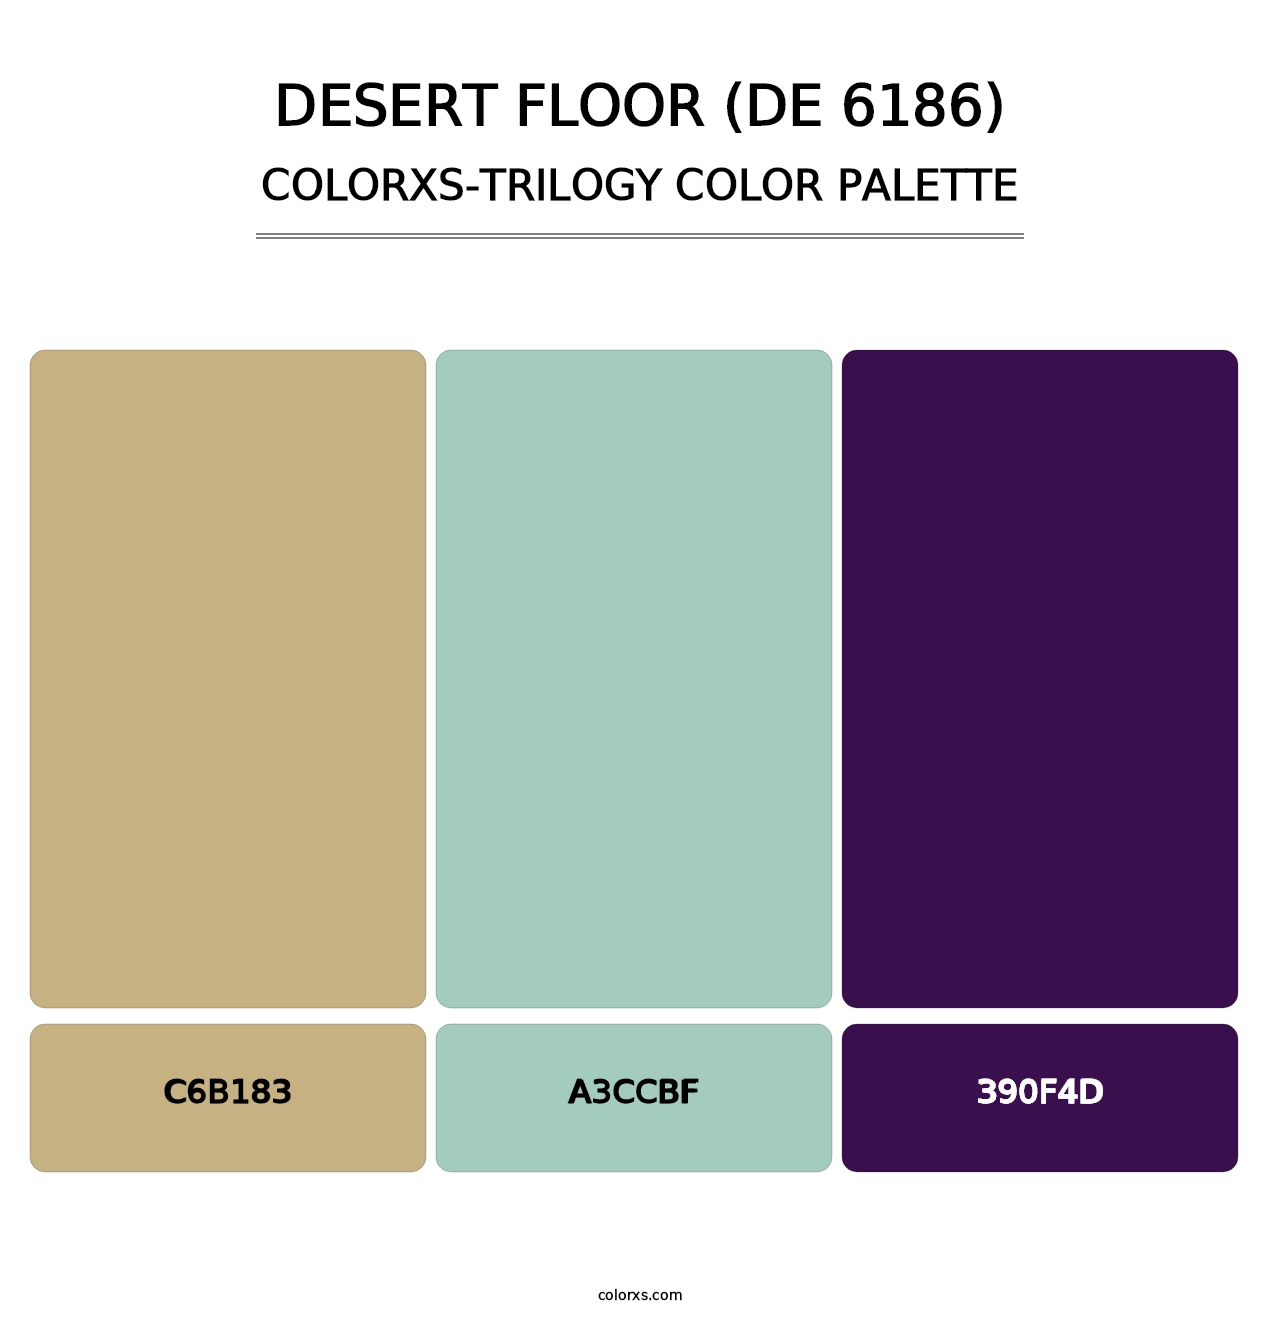 Desert Floor (DE 6186) - Colorxs Trilogy Palette